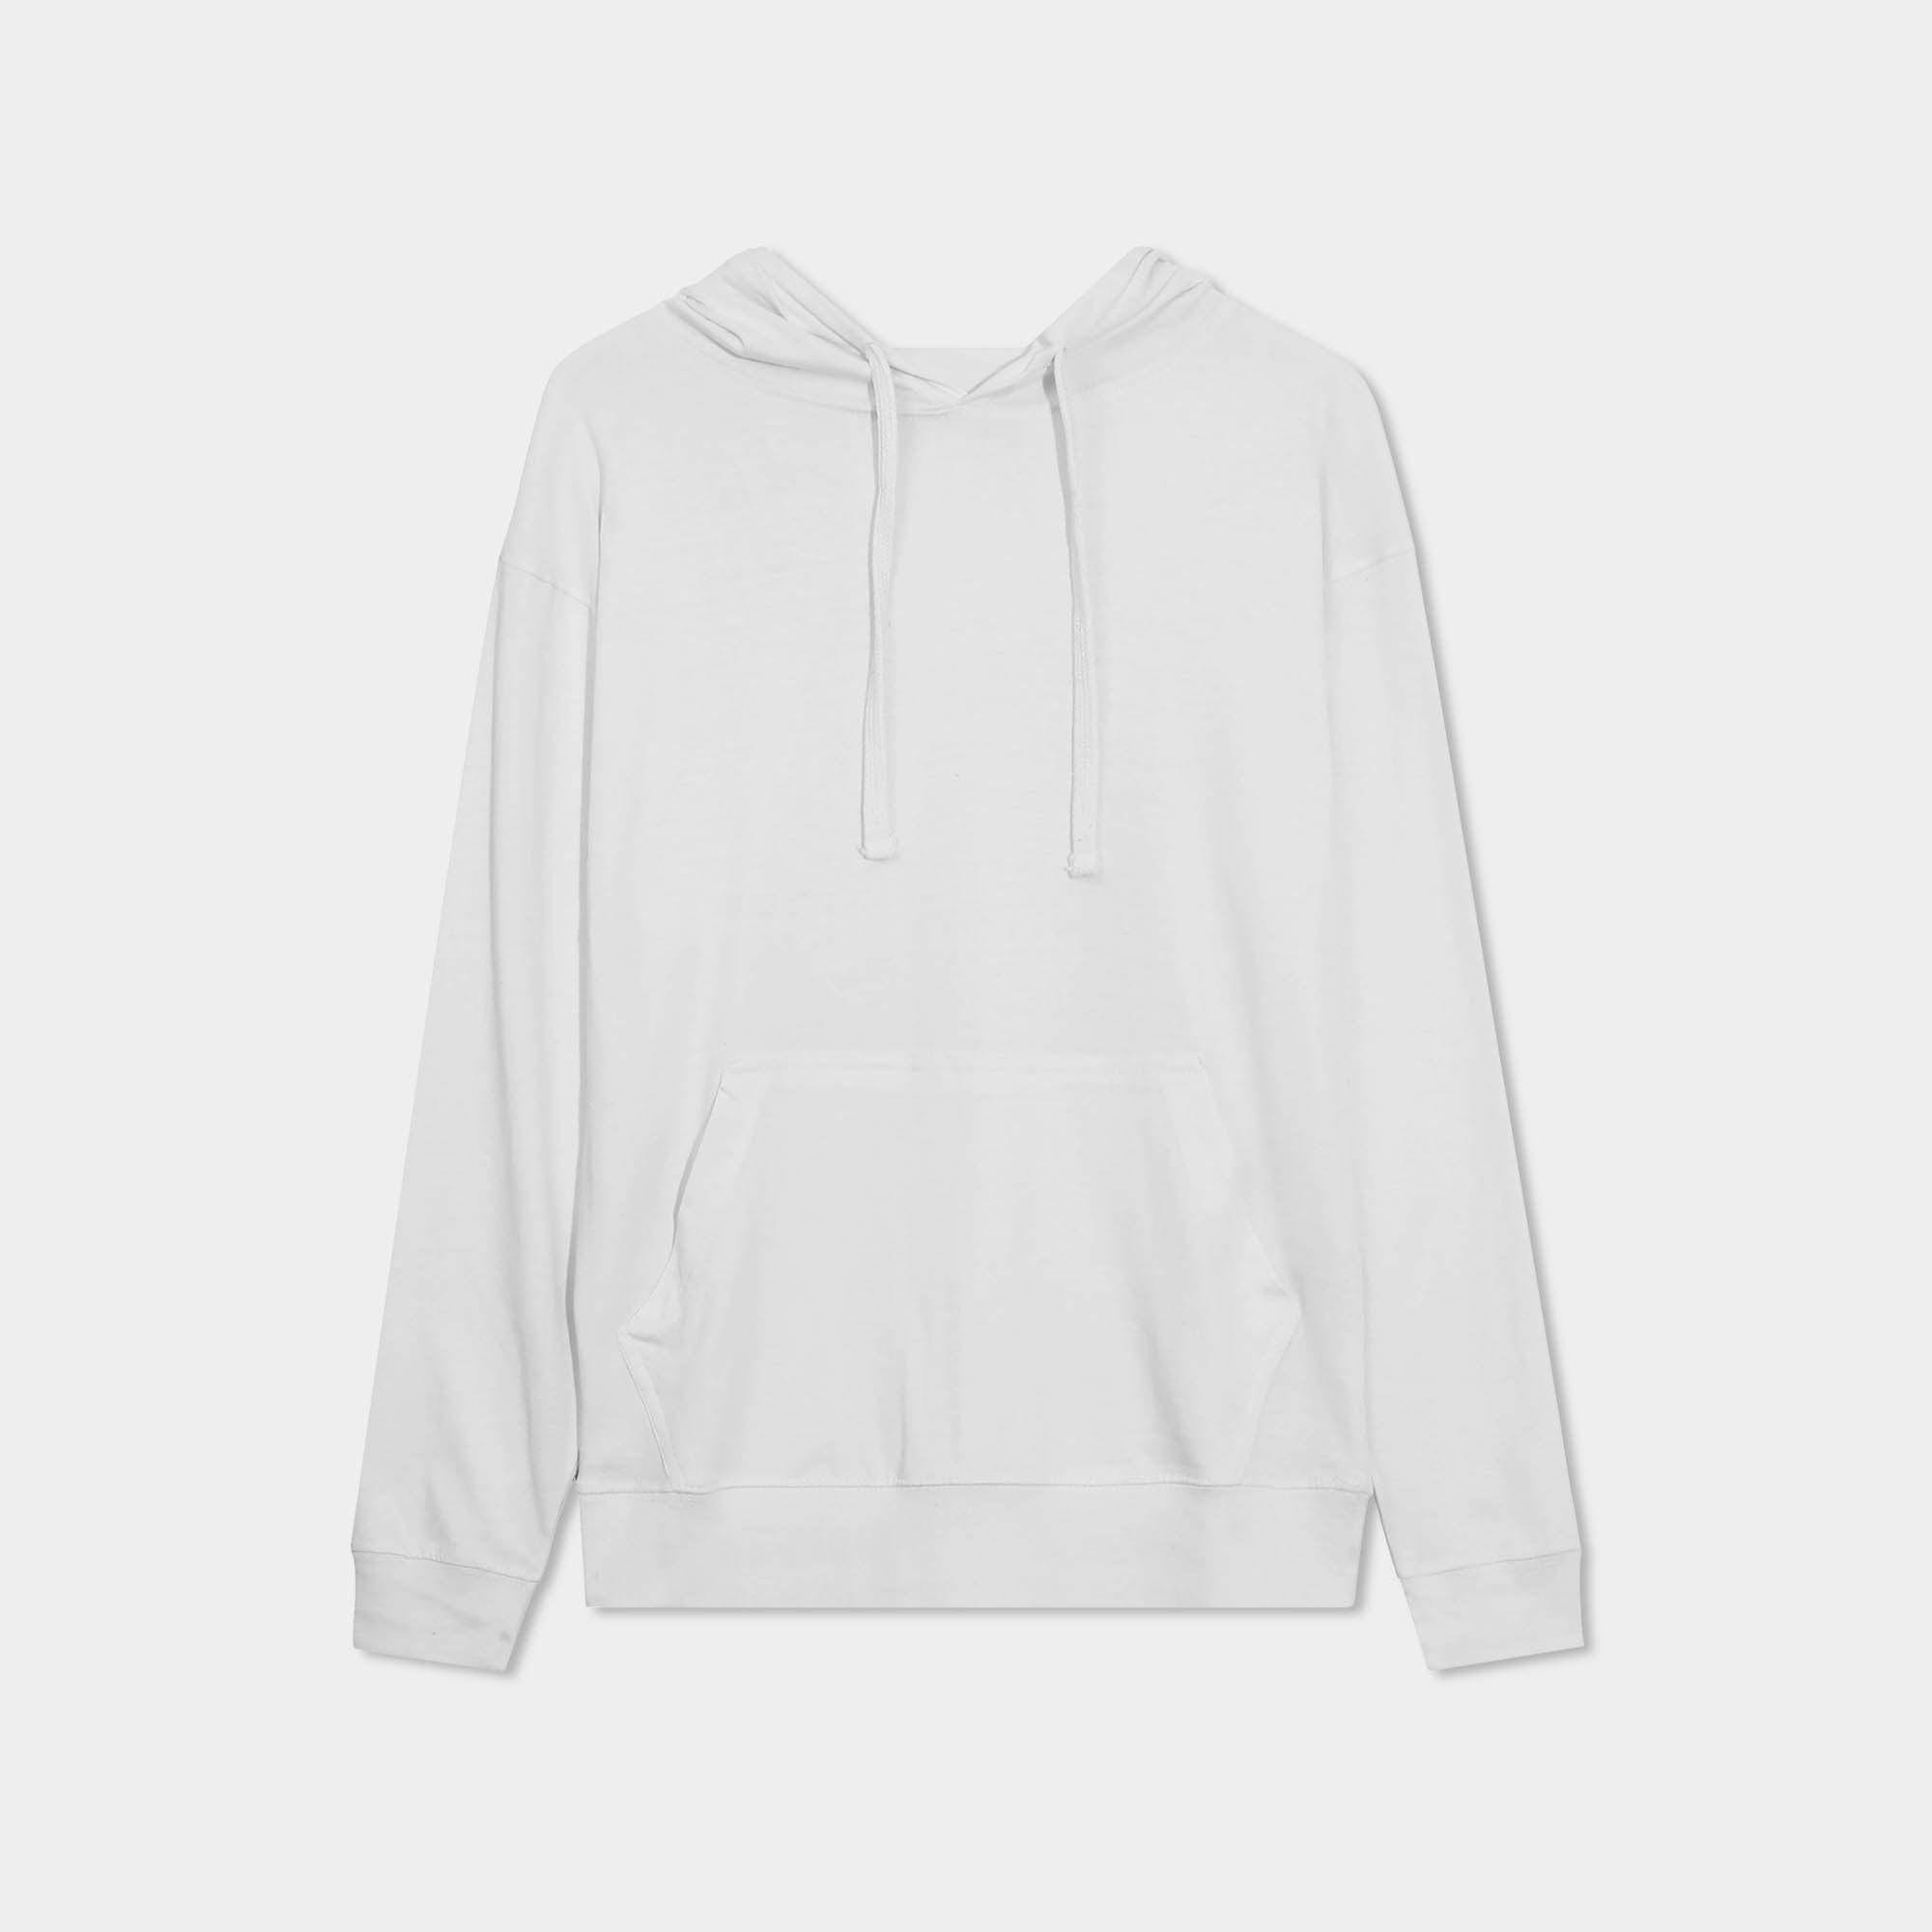 hoodie_hoodies for men_hooded sweatshirt_custom hoodies_cheap hoodies_couple hoodies_pullover hoodie_mens pullover hoodie_White